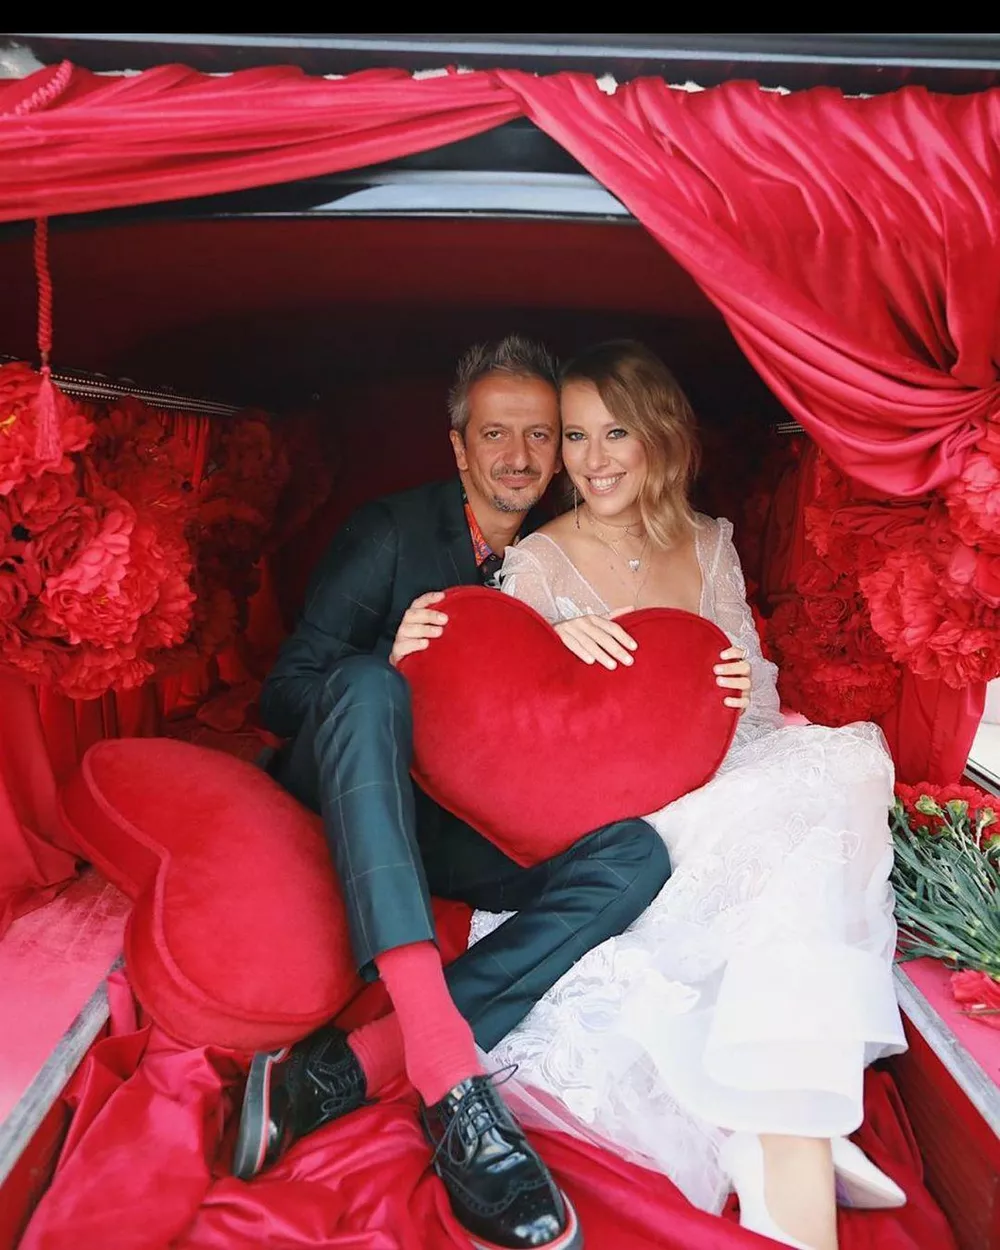 Константин Богомолов и Ксения Собчак в день своей свадьбы, 13 сентября 2019 года